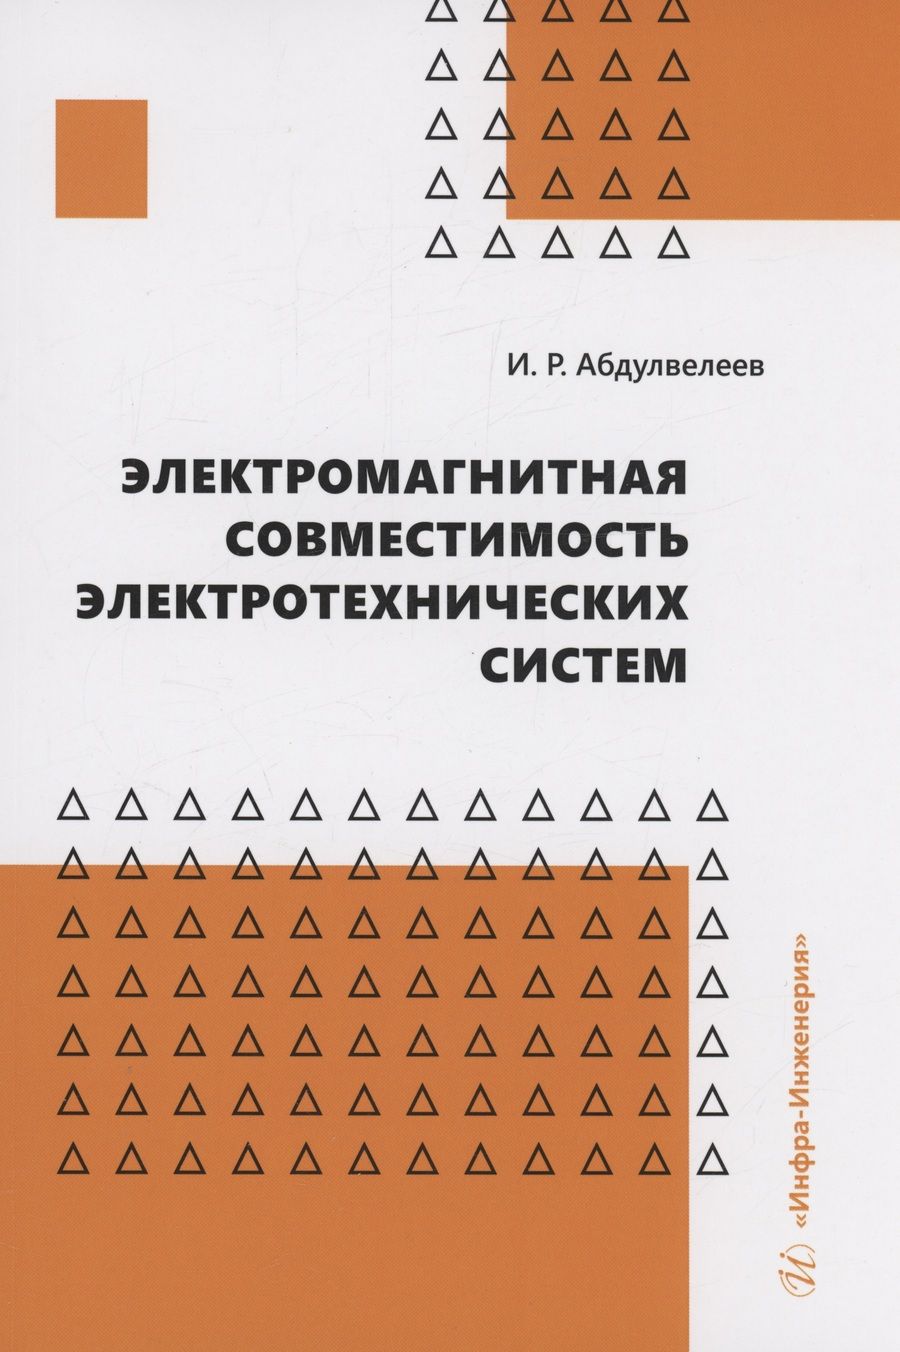 Обложка книги "Абдулвелеев: Электромагнитная совместимость электротехнических систем. Учебное пособие"